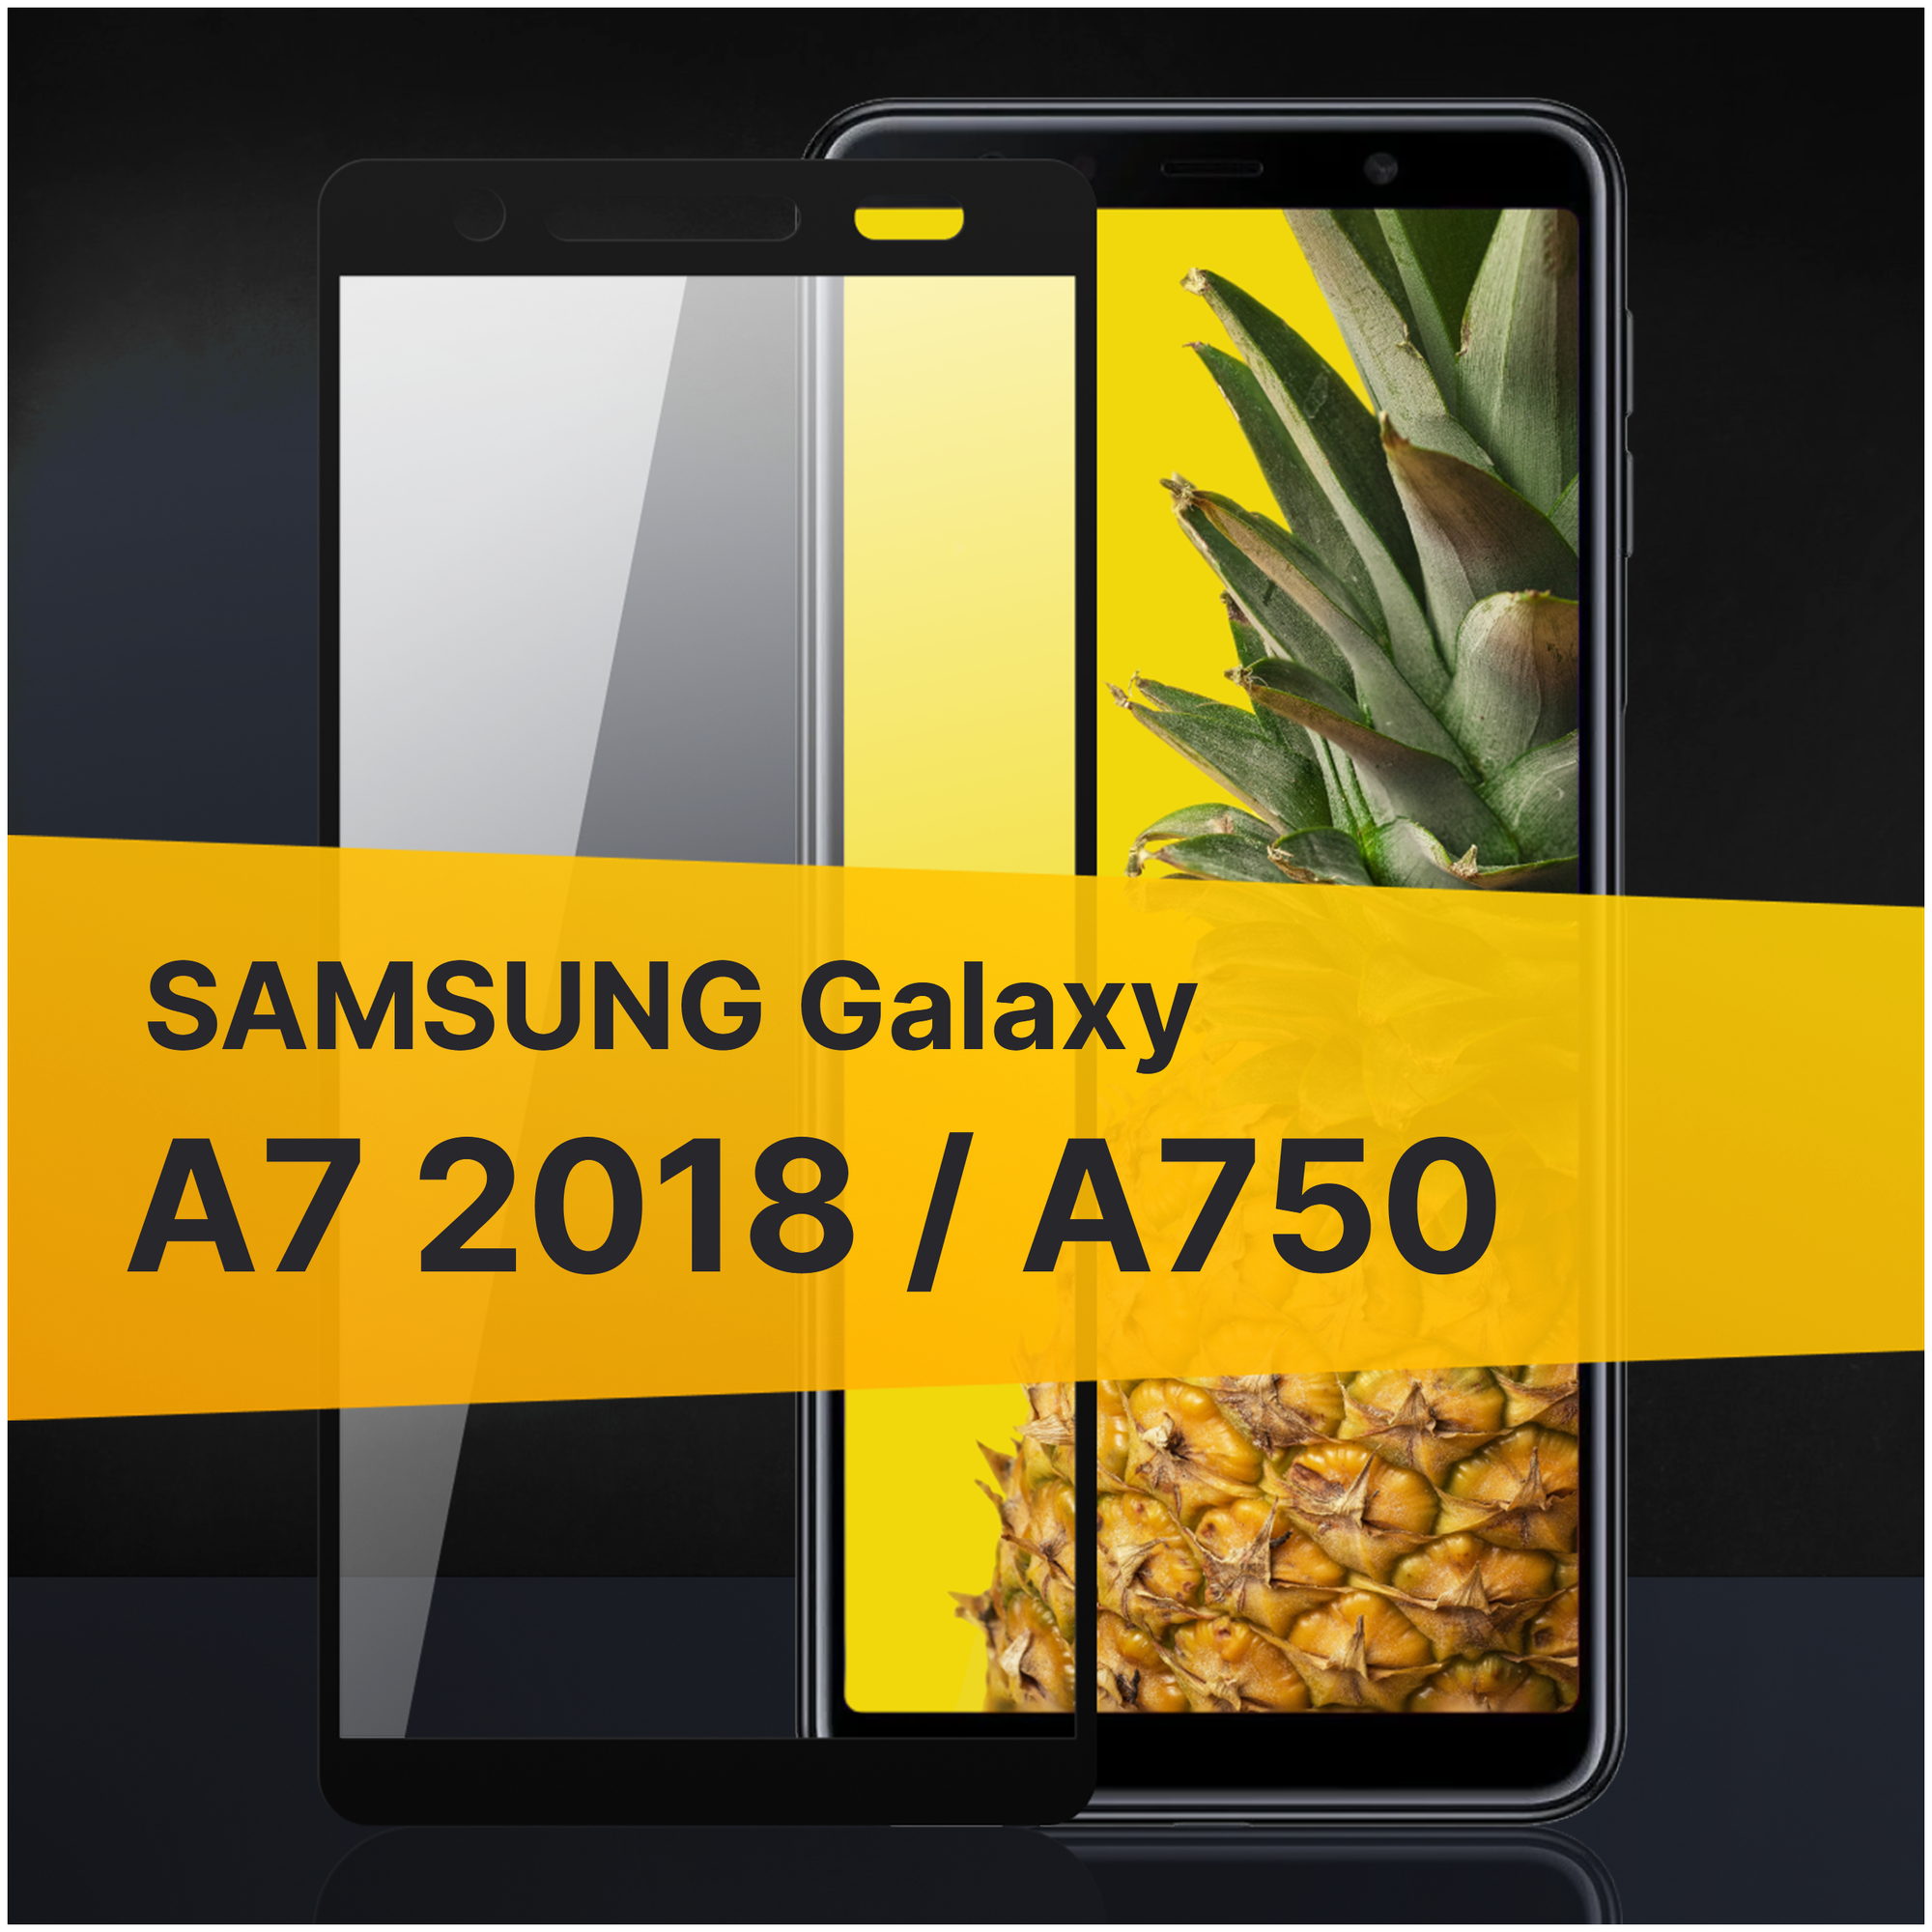 Противоударное защитное стекло для телефона Samsung Galaxy A7 2018 и A750 / Полноклеевое 3D стекло с олеофобным покрытием на смартфон Самсунг Галакси А7 2018 и А750 / С черной рамкой